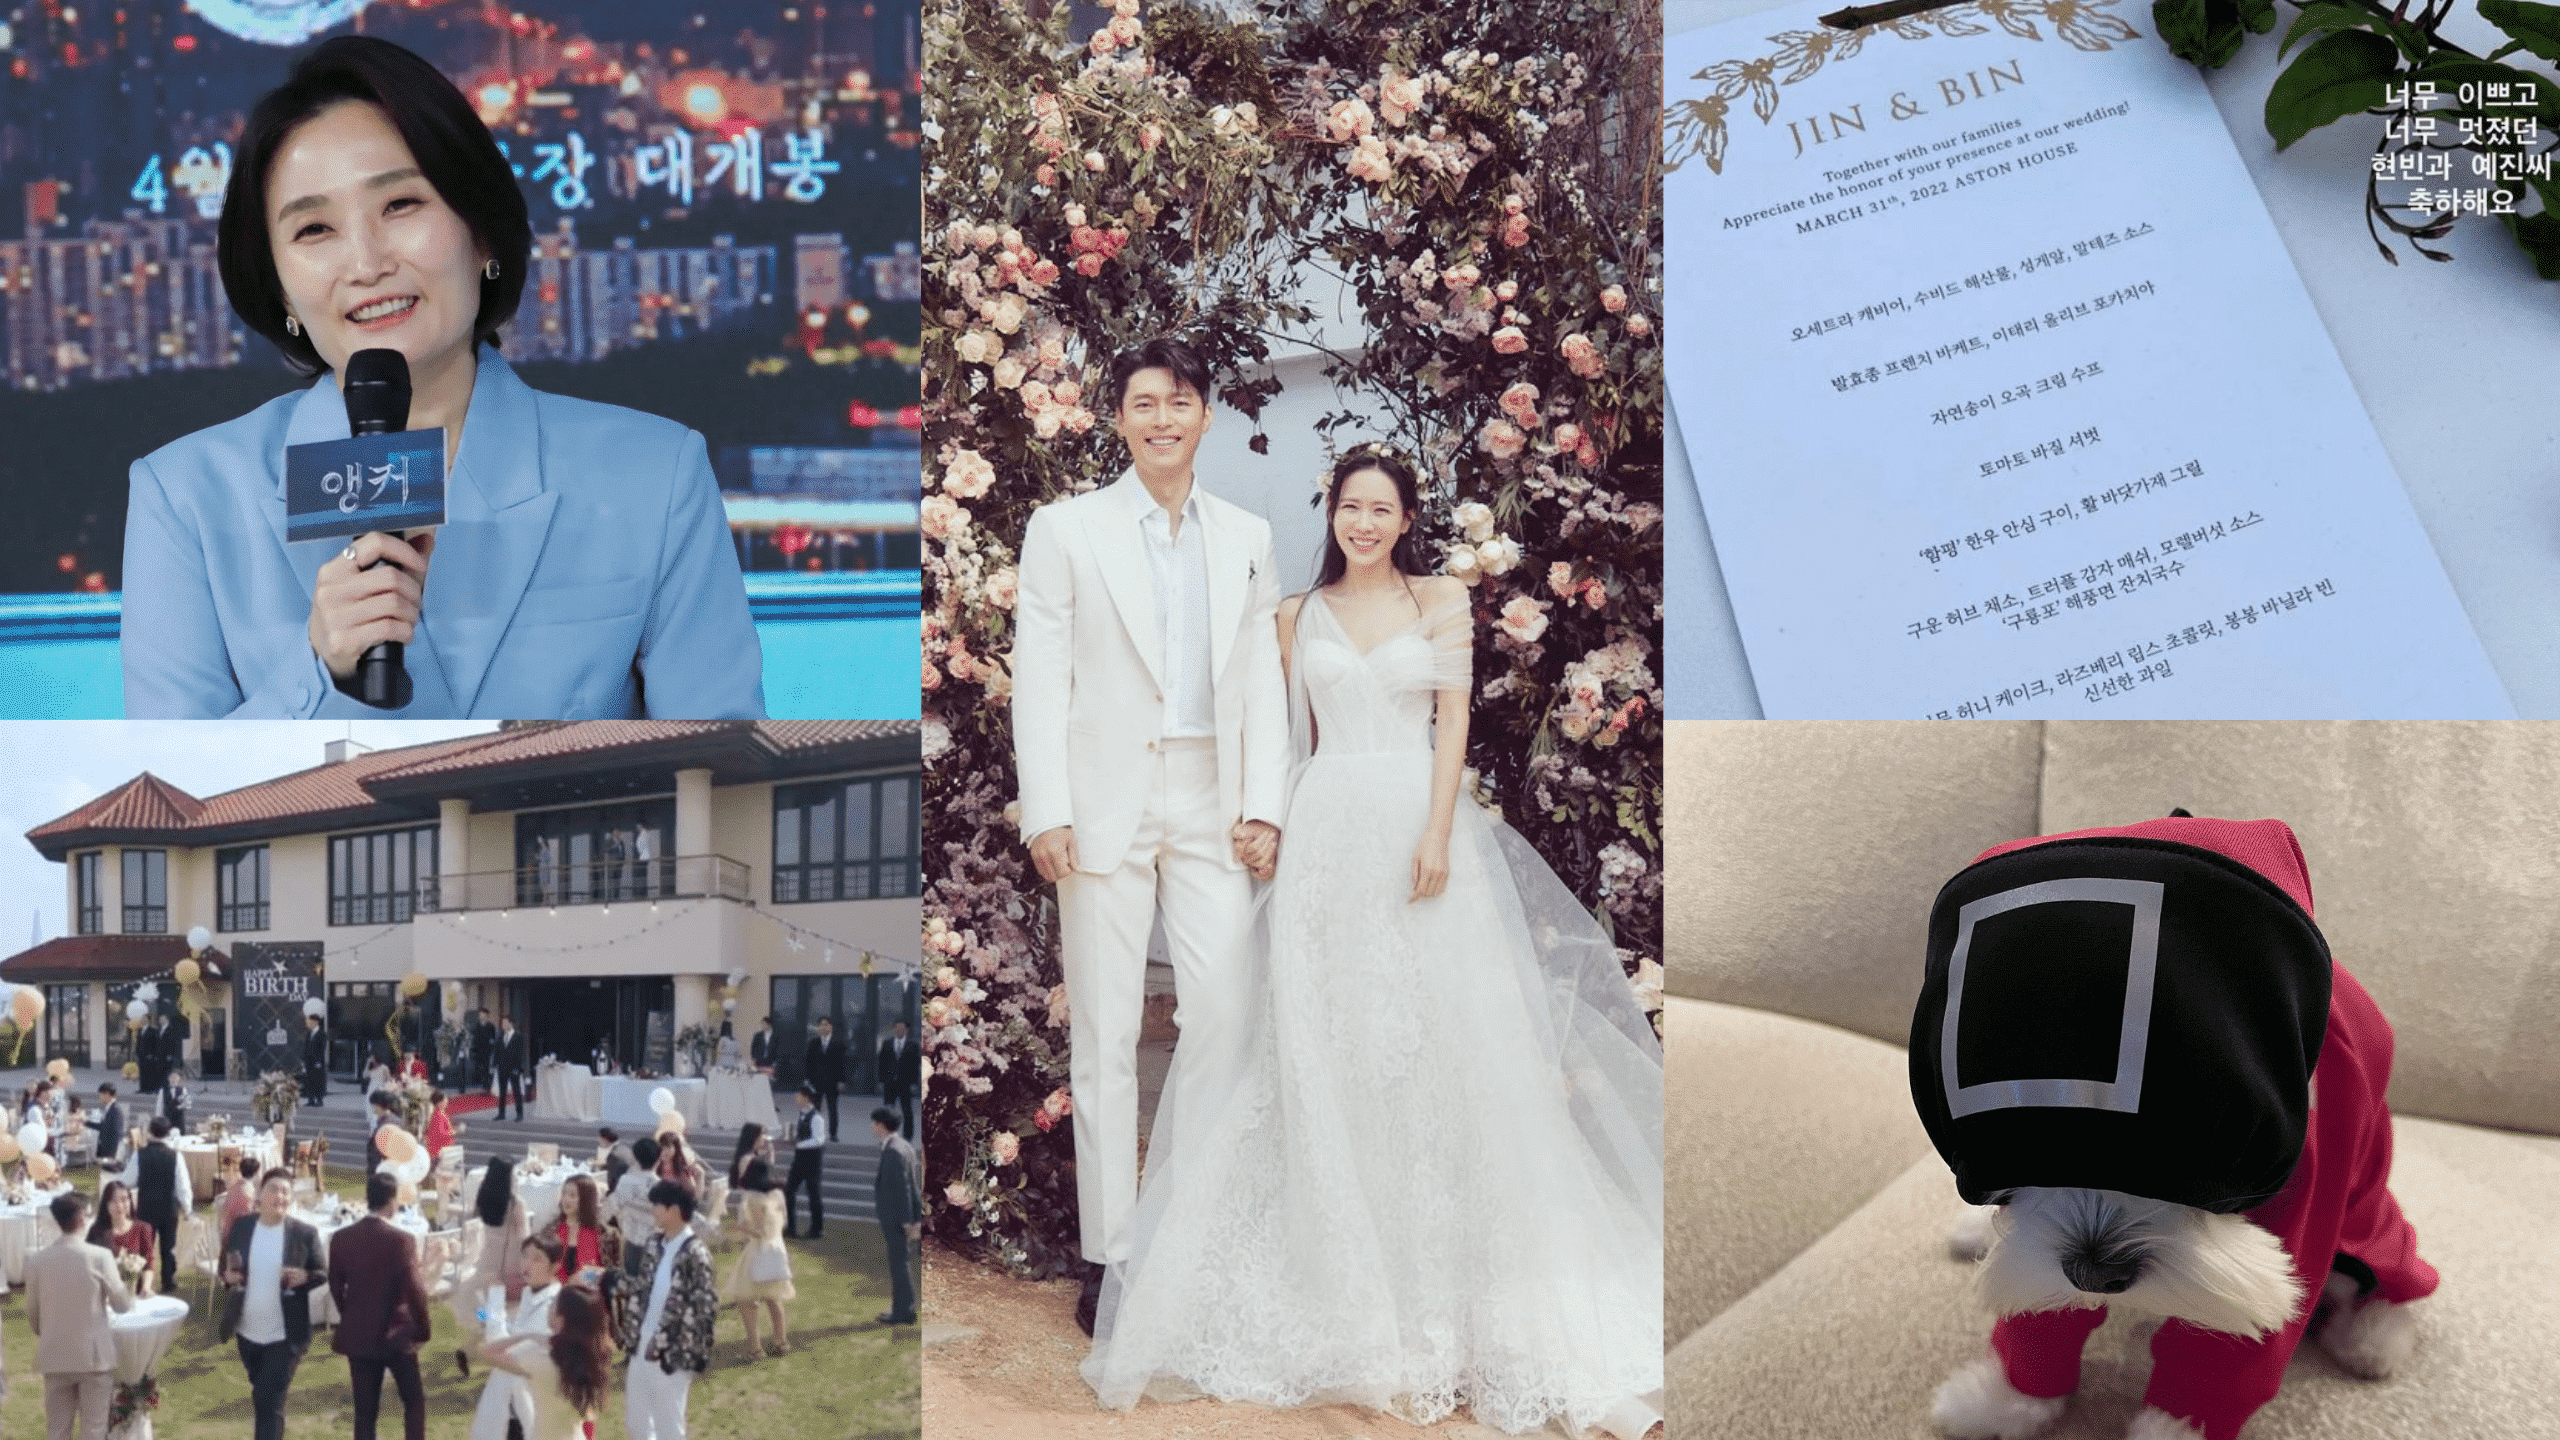 Revelamos 5 datos curiosos de la boda de Son Ye Jin y Hyun Bin